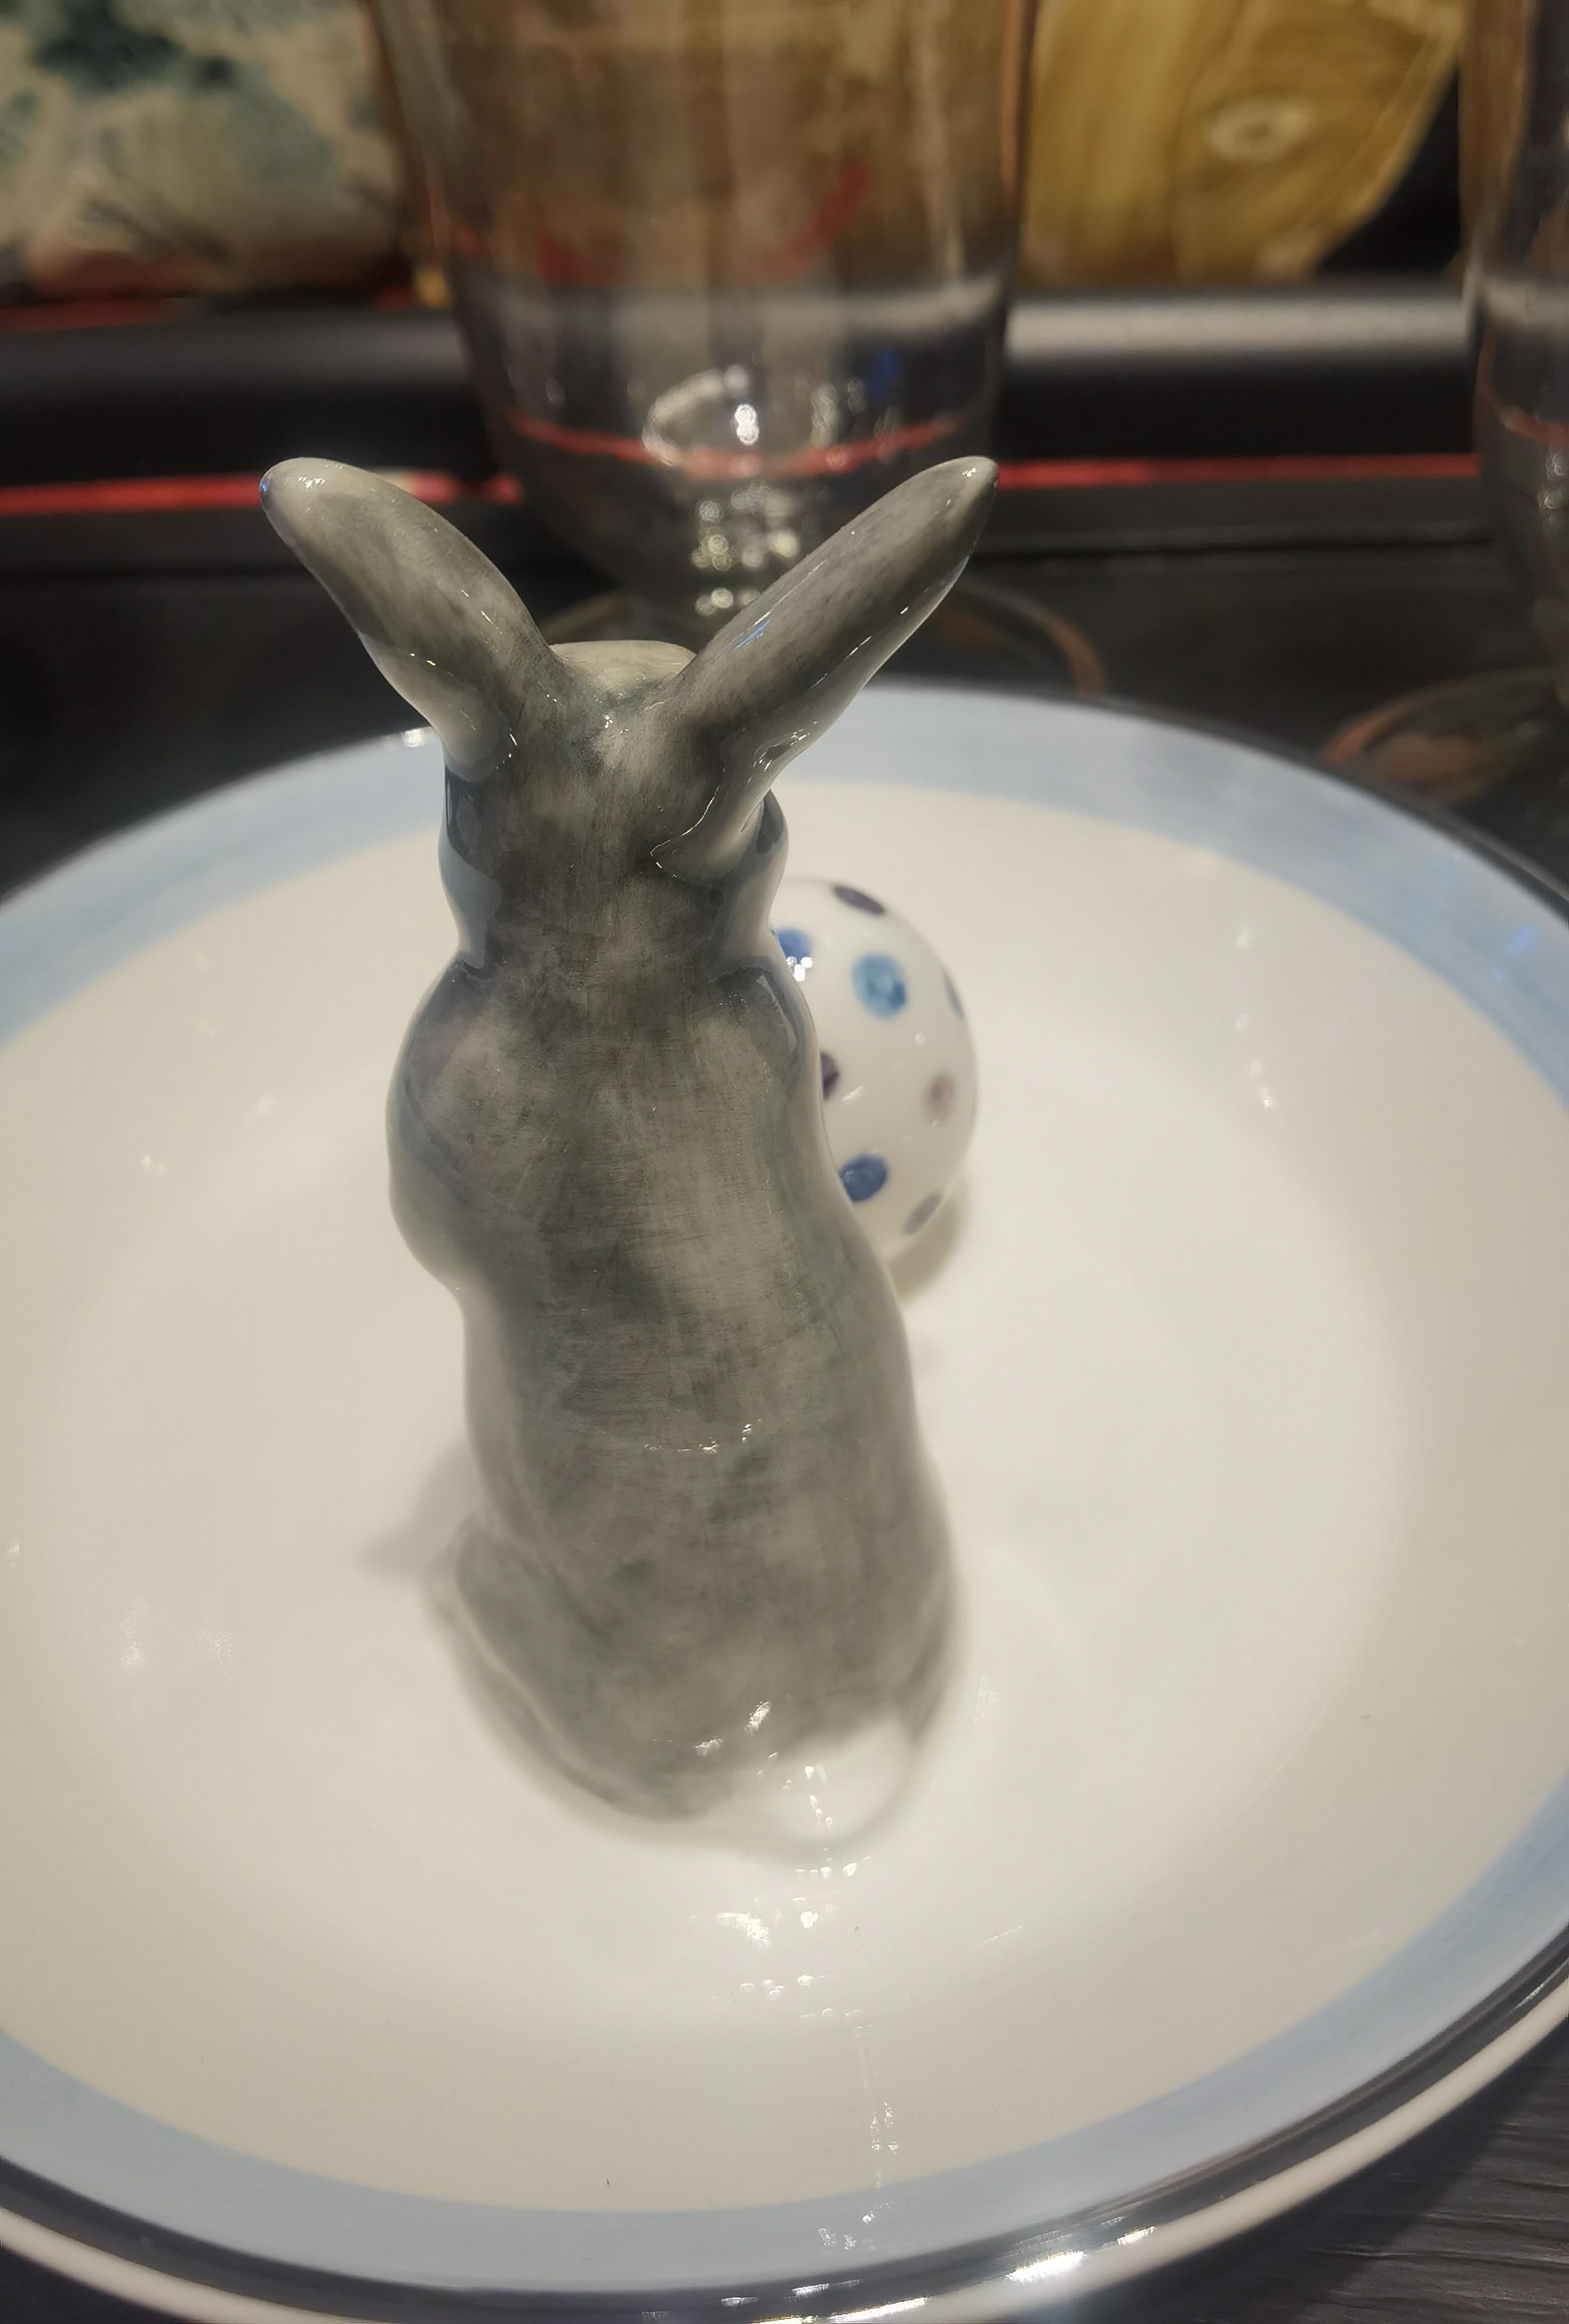 Vollständig handgefertigte Porzellanschale mit einer freihändig gemalten naturalistischen Hasenfigur in Grau und Weiß mit einem Ei. Der Osterhase sitzt neben einem handbemalten Ei, um das man Nüsse oder Süßigkeiten dekorieren kann. Umrandet mit